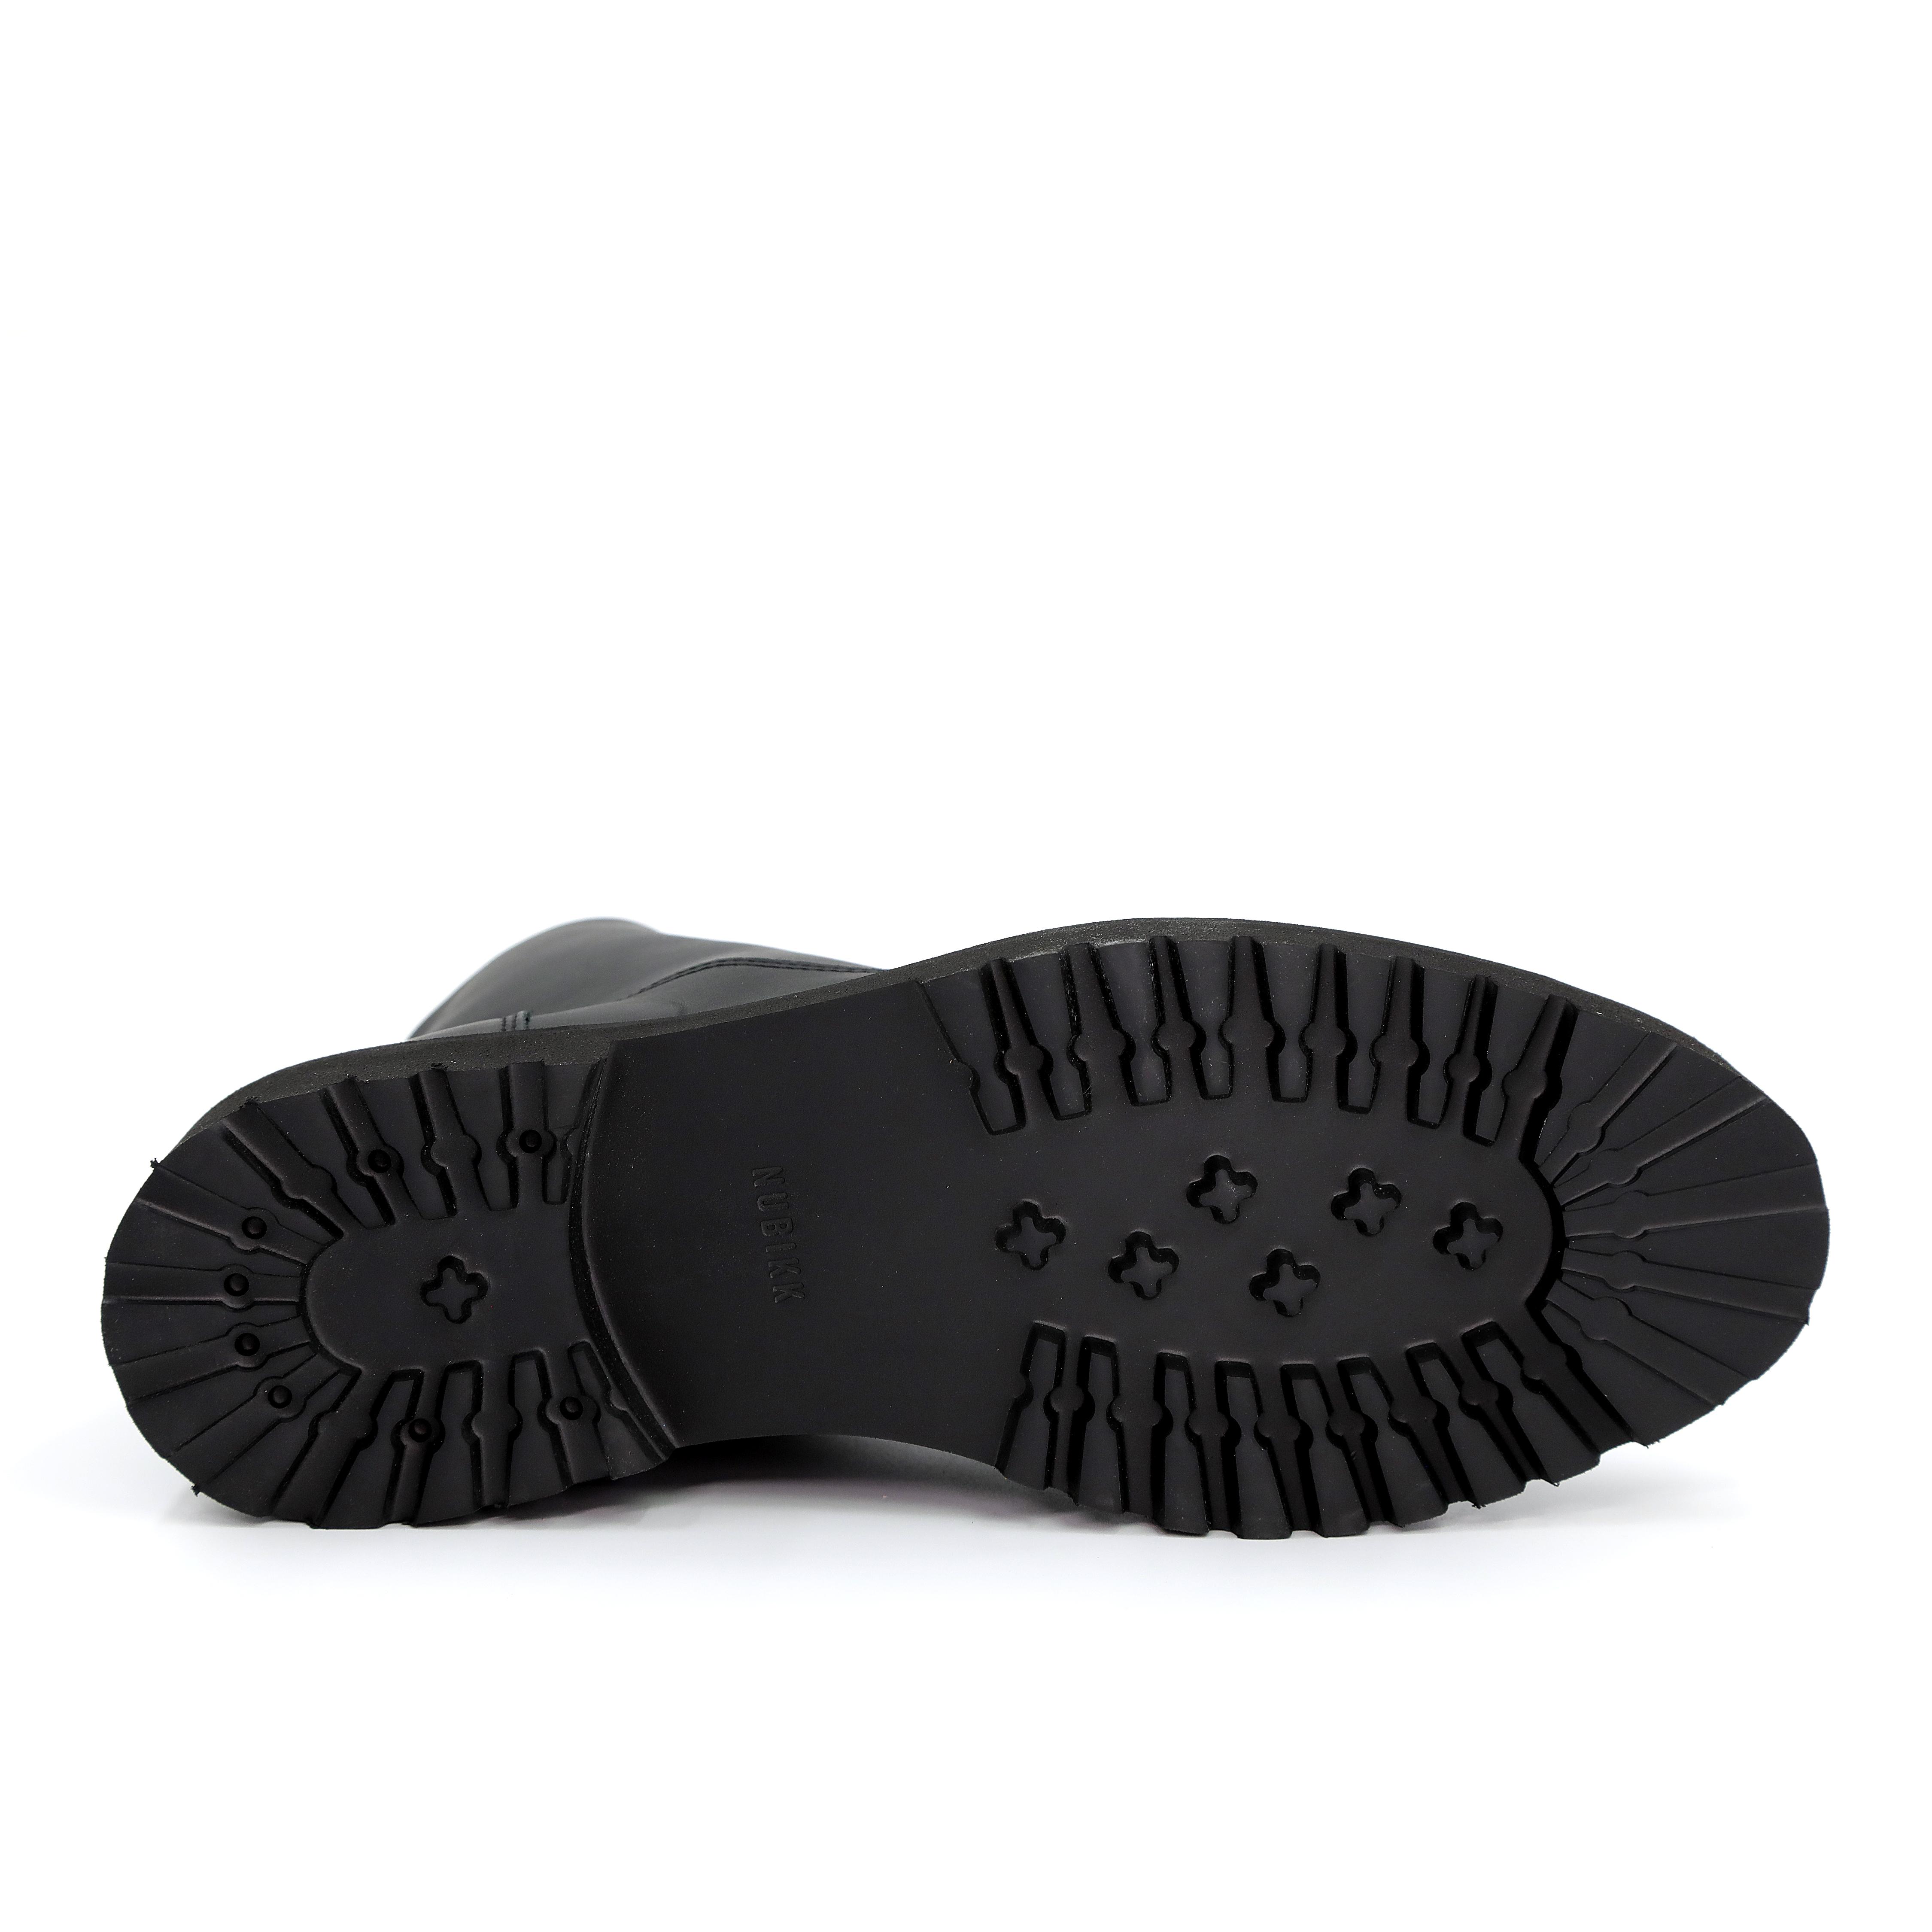 Мужские ботинки Nubikk, черные, цвет черный, размер 44 - фото 5